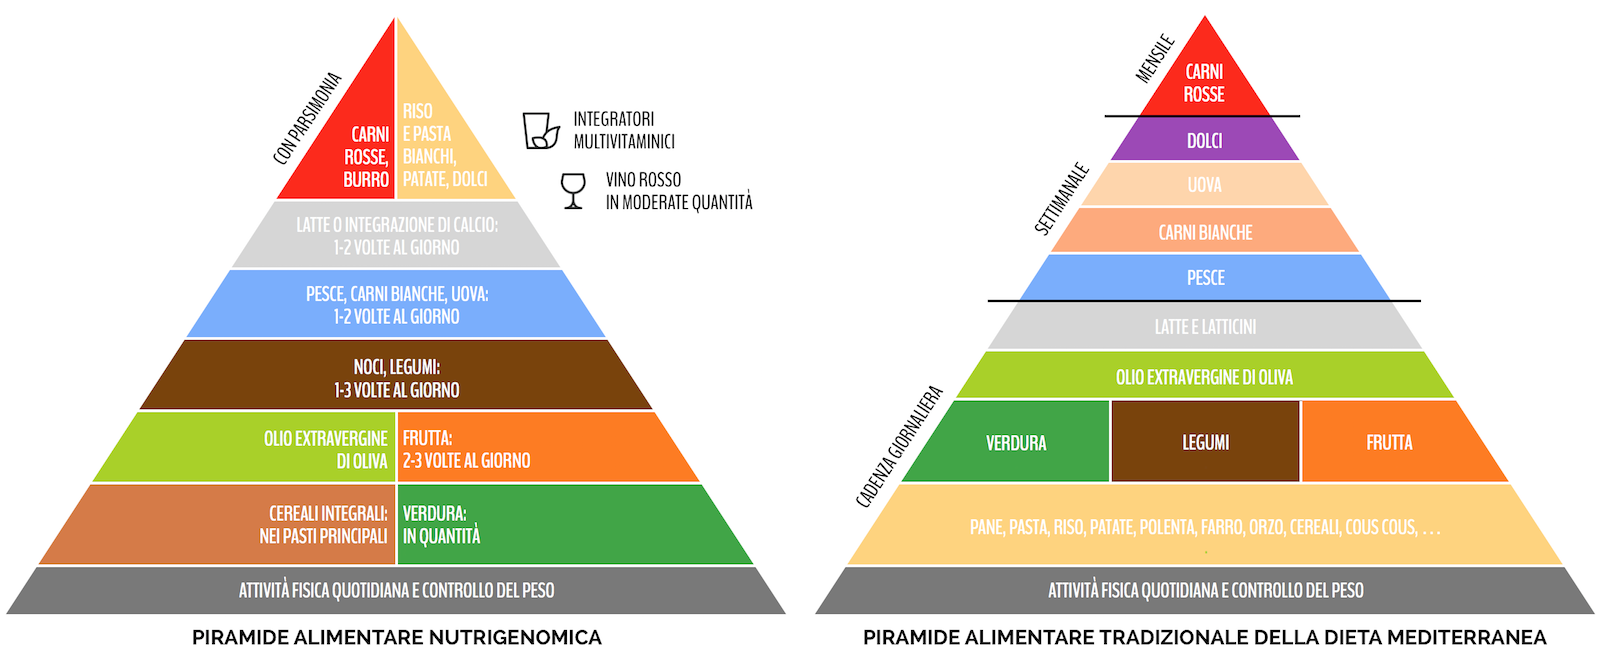 Piramidi alimentari a confronto: nutrigenomica vs. dieta mediterranea